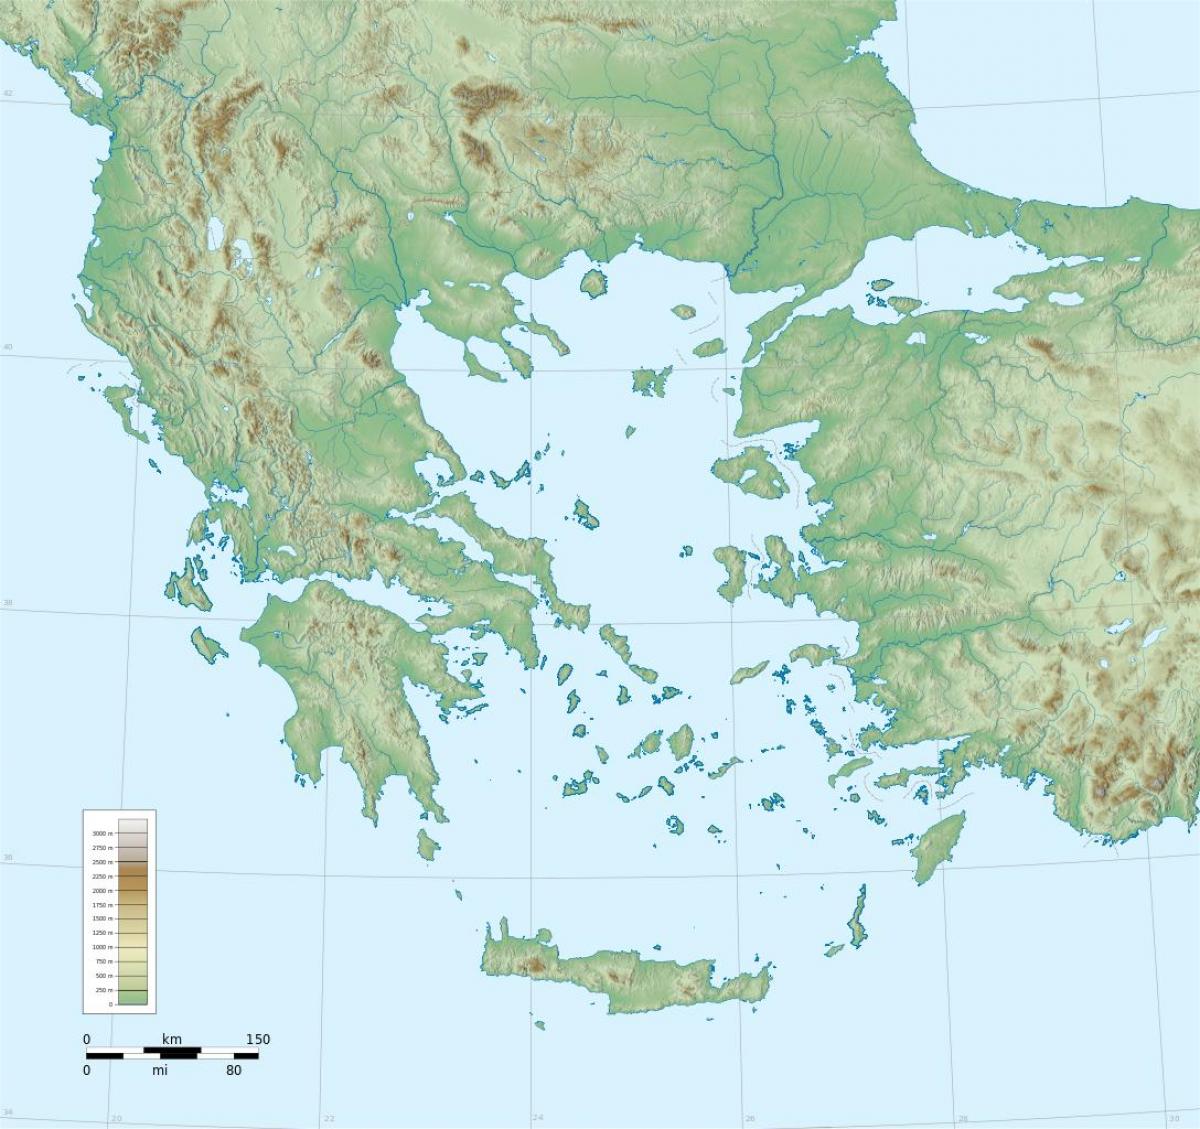 Modelo de Mapa Iconográfico - Educ. Na Grécia Antiga